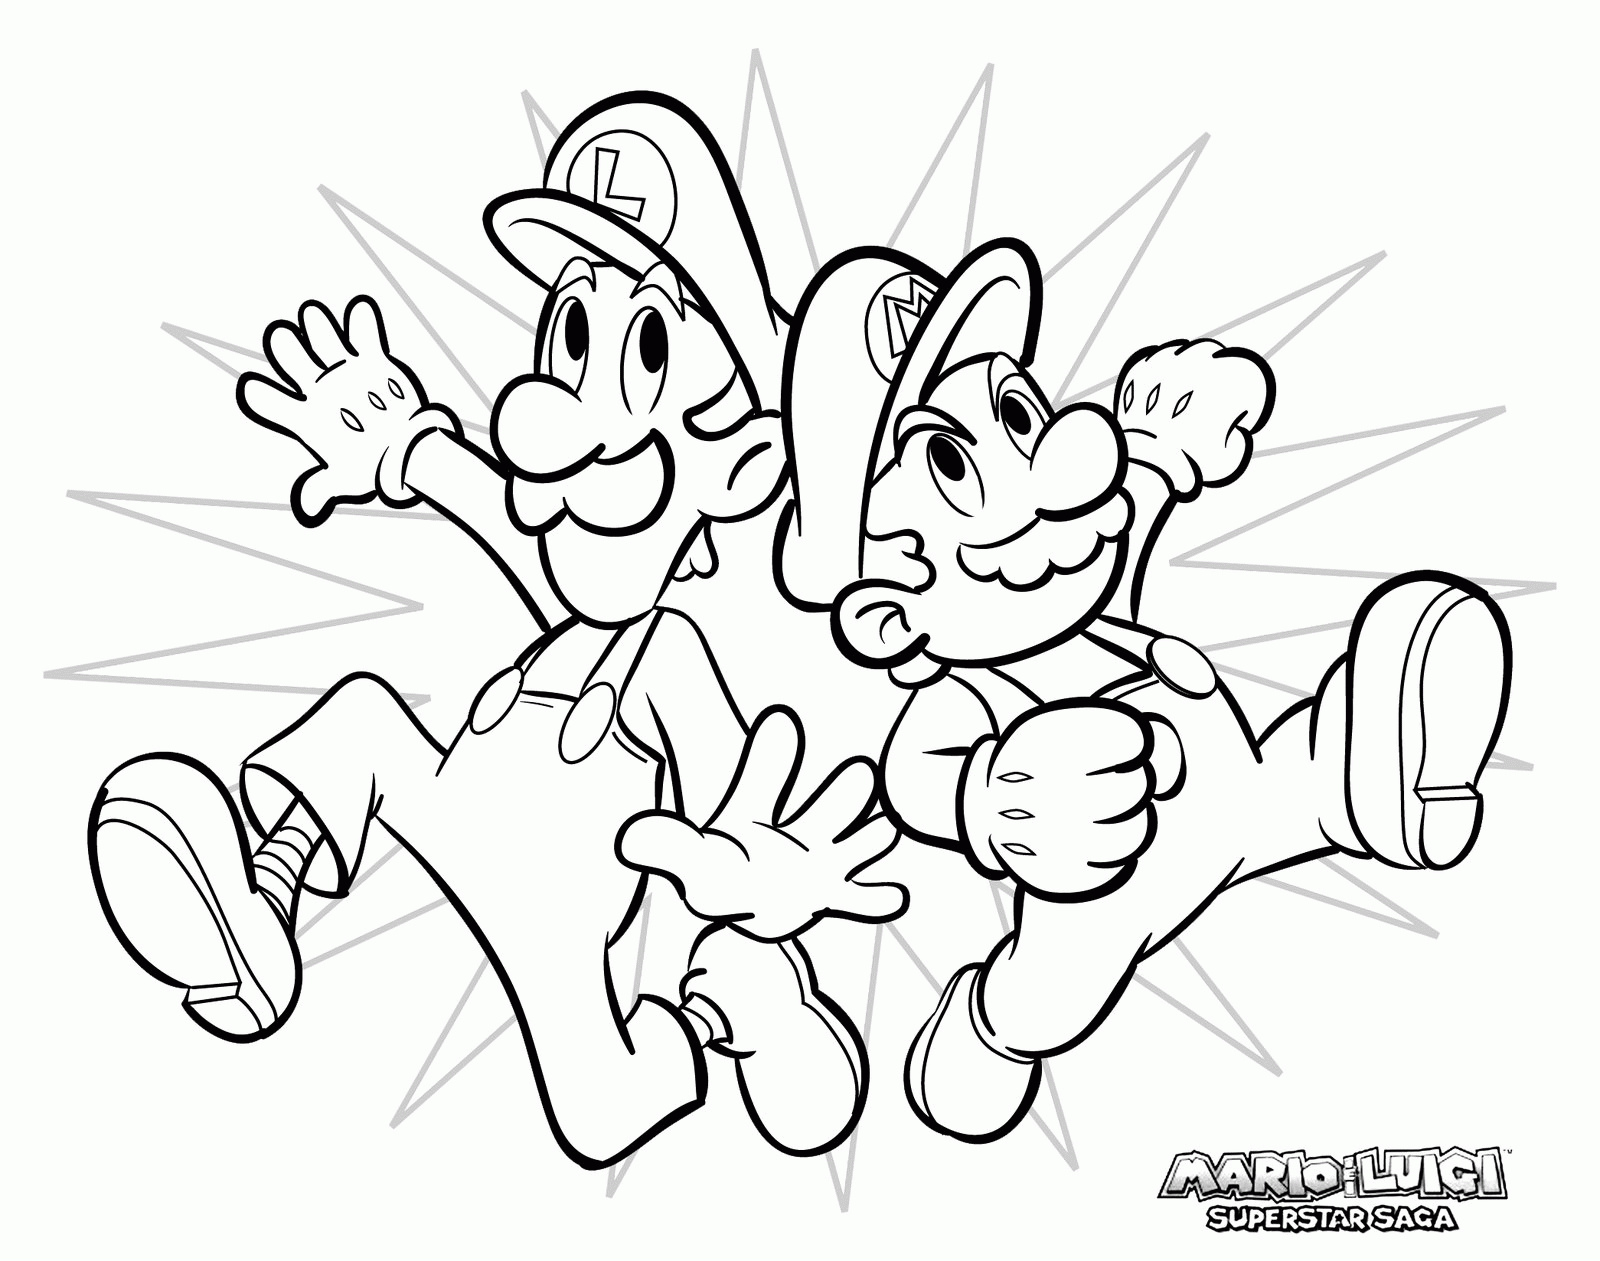 Irmãos Mario e Luigi